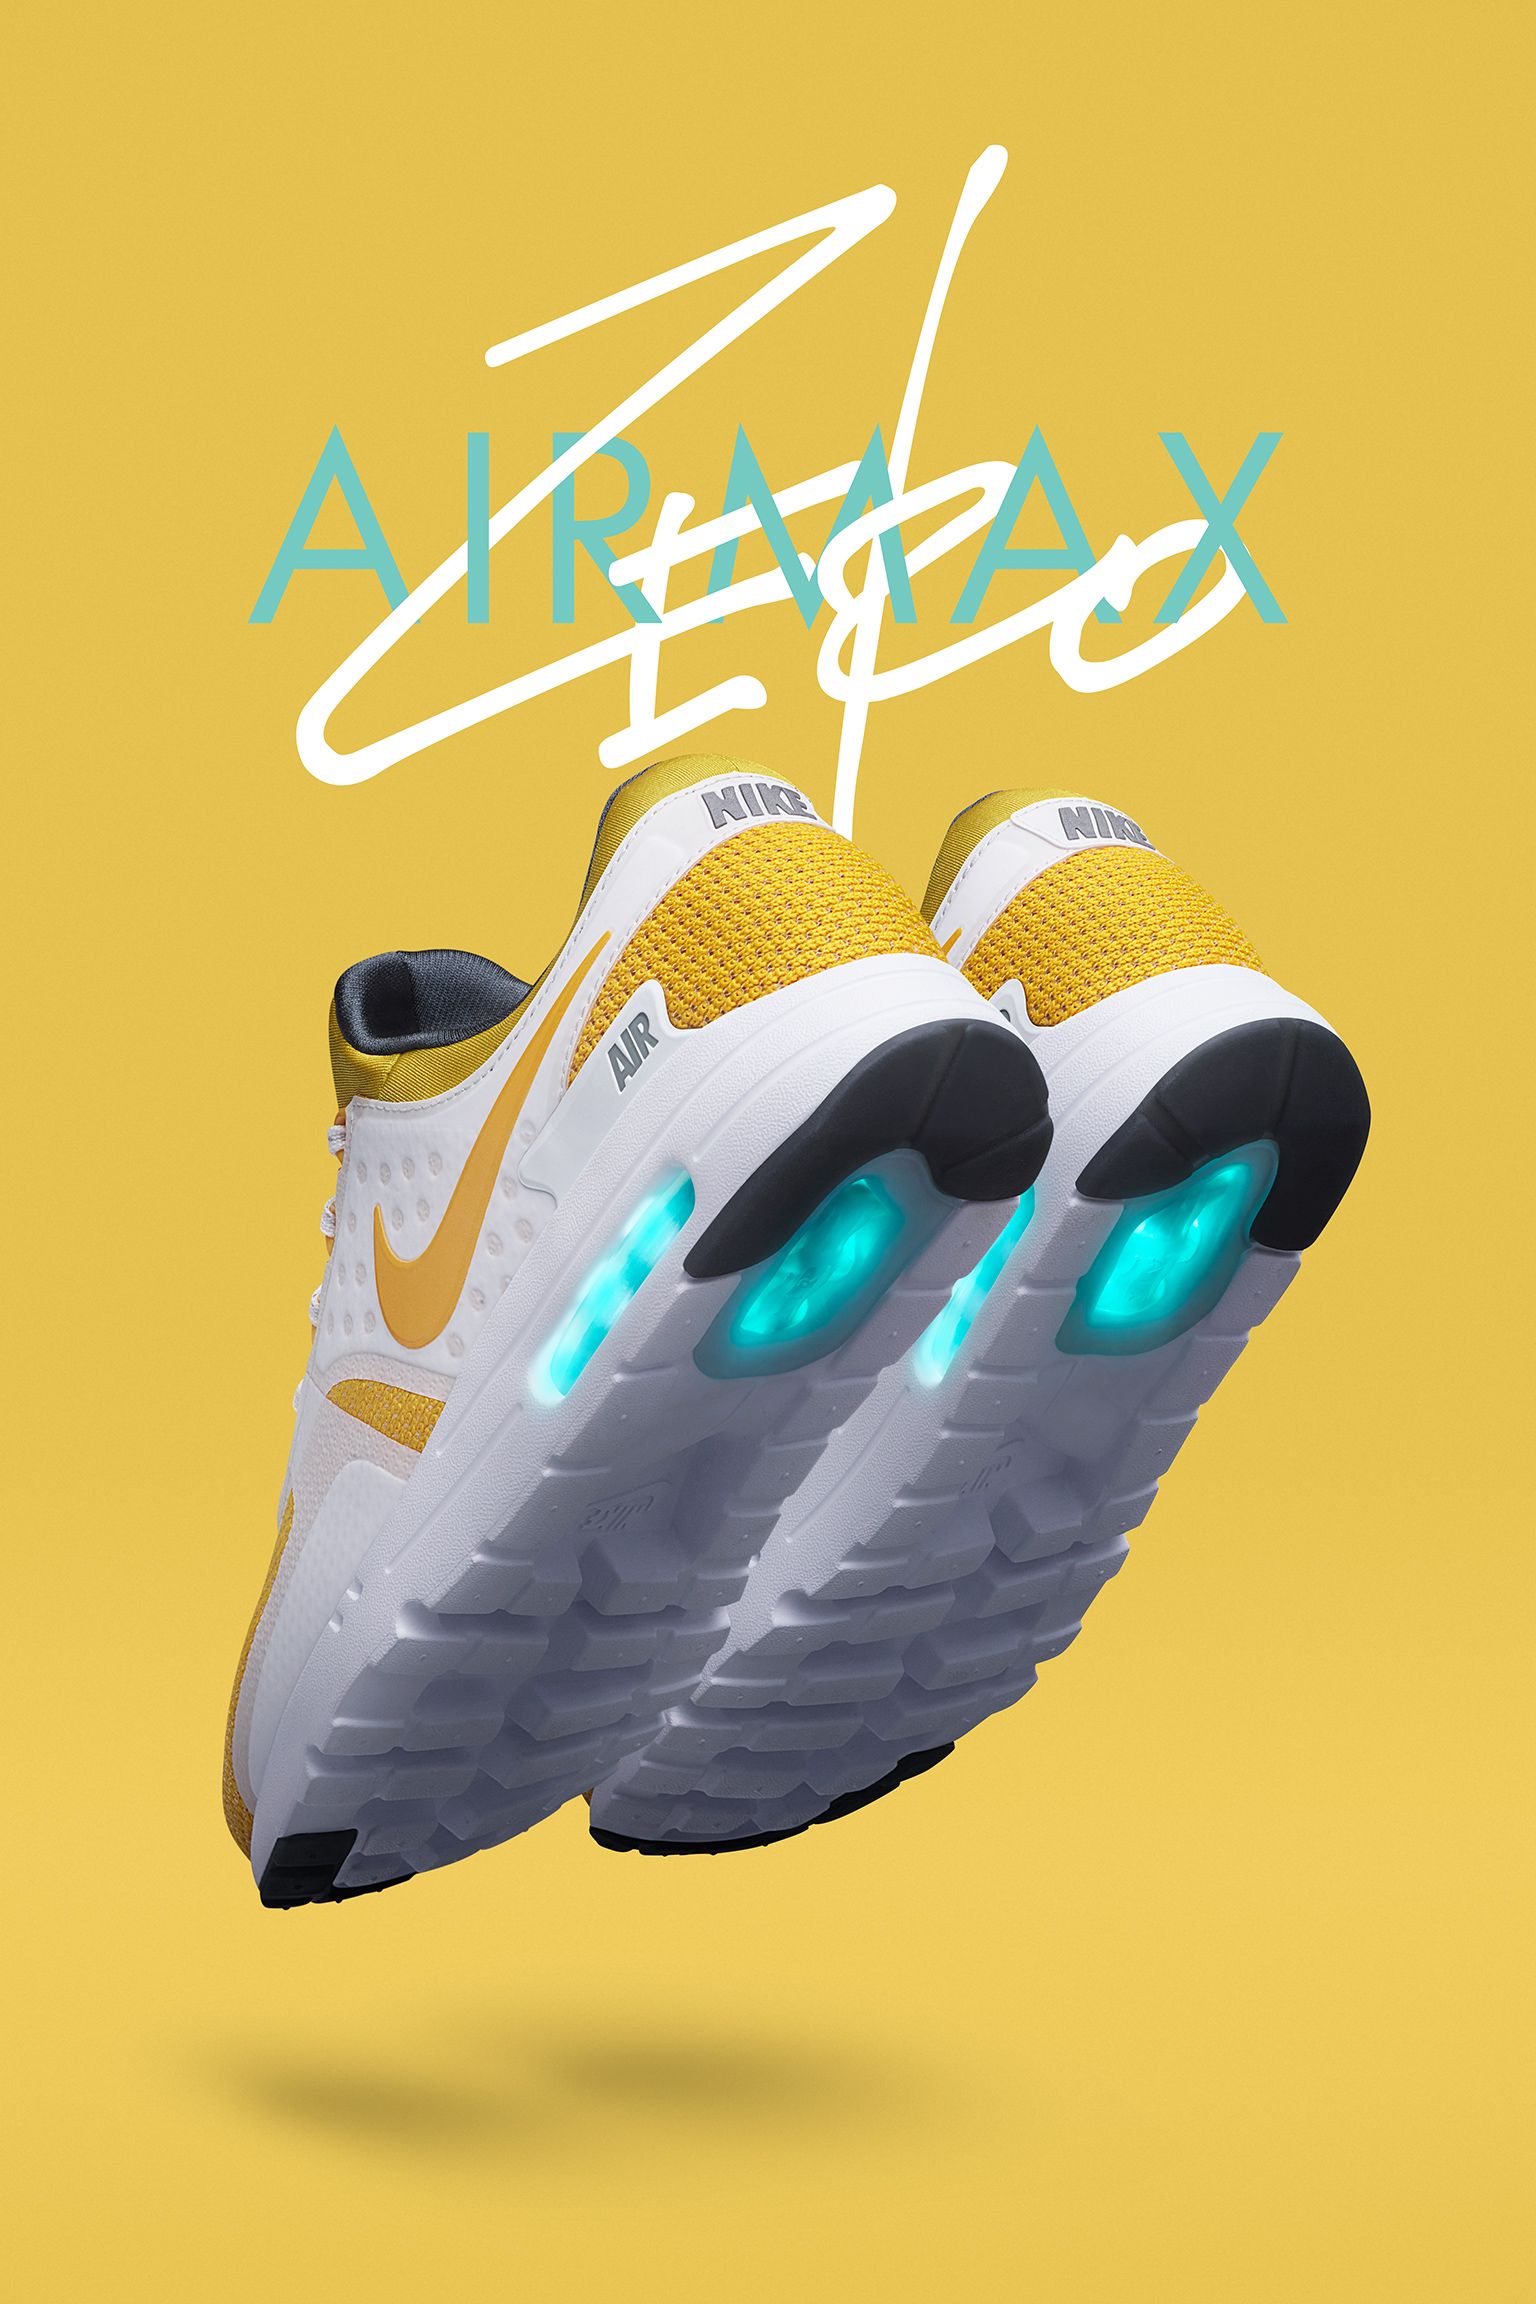 ナイキ エア マックス ゼロ 'Yellow' 発売日. Nike SNKRS JP